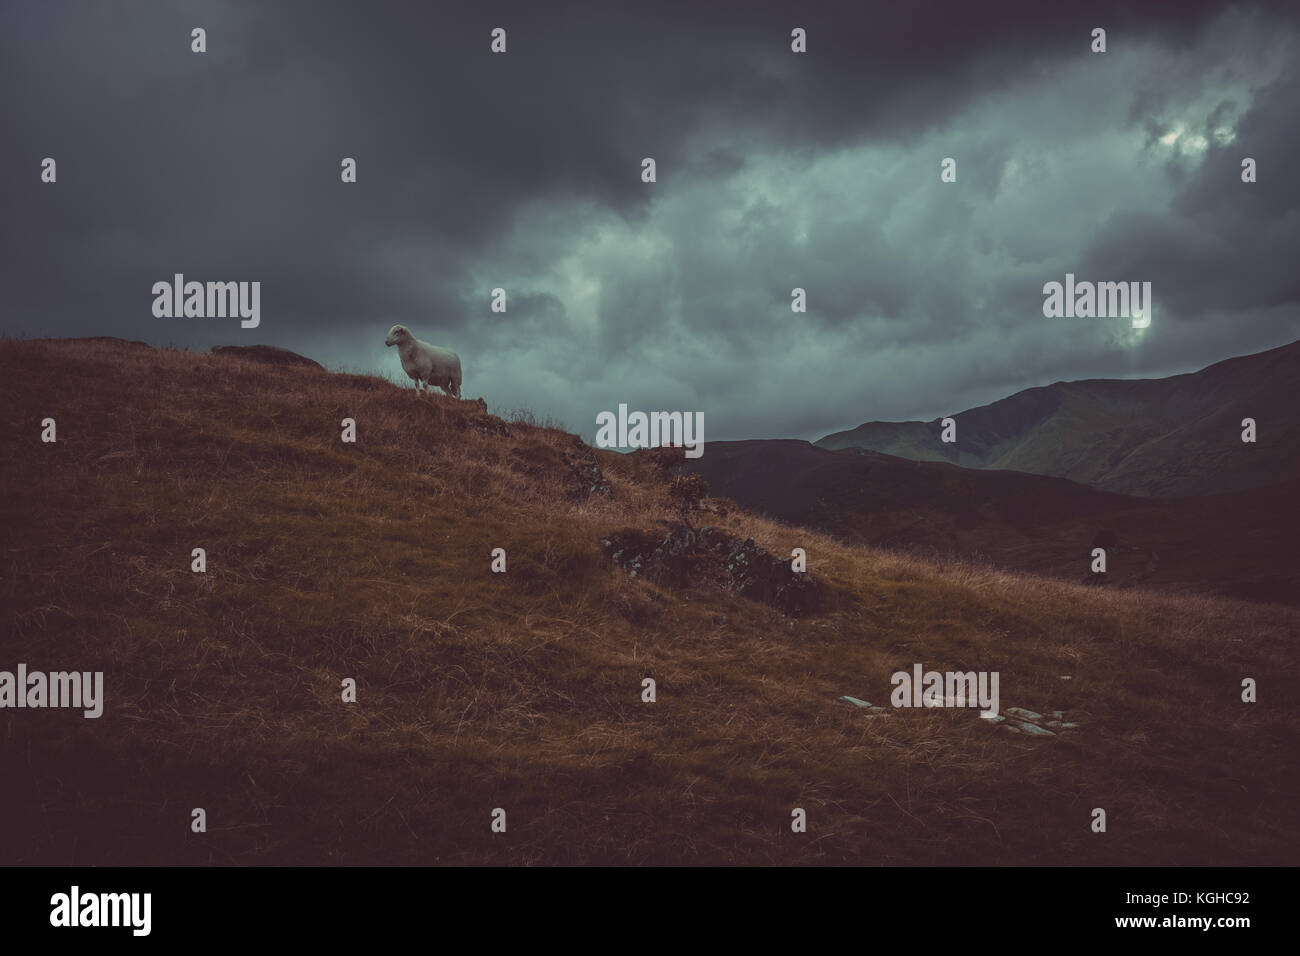 Sheep on snowdon mountain Stock Photo